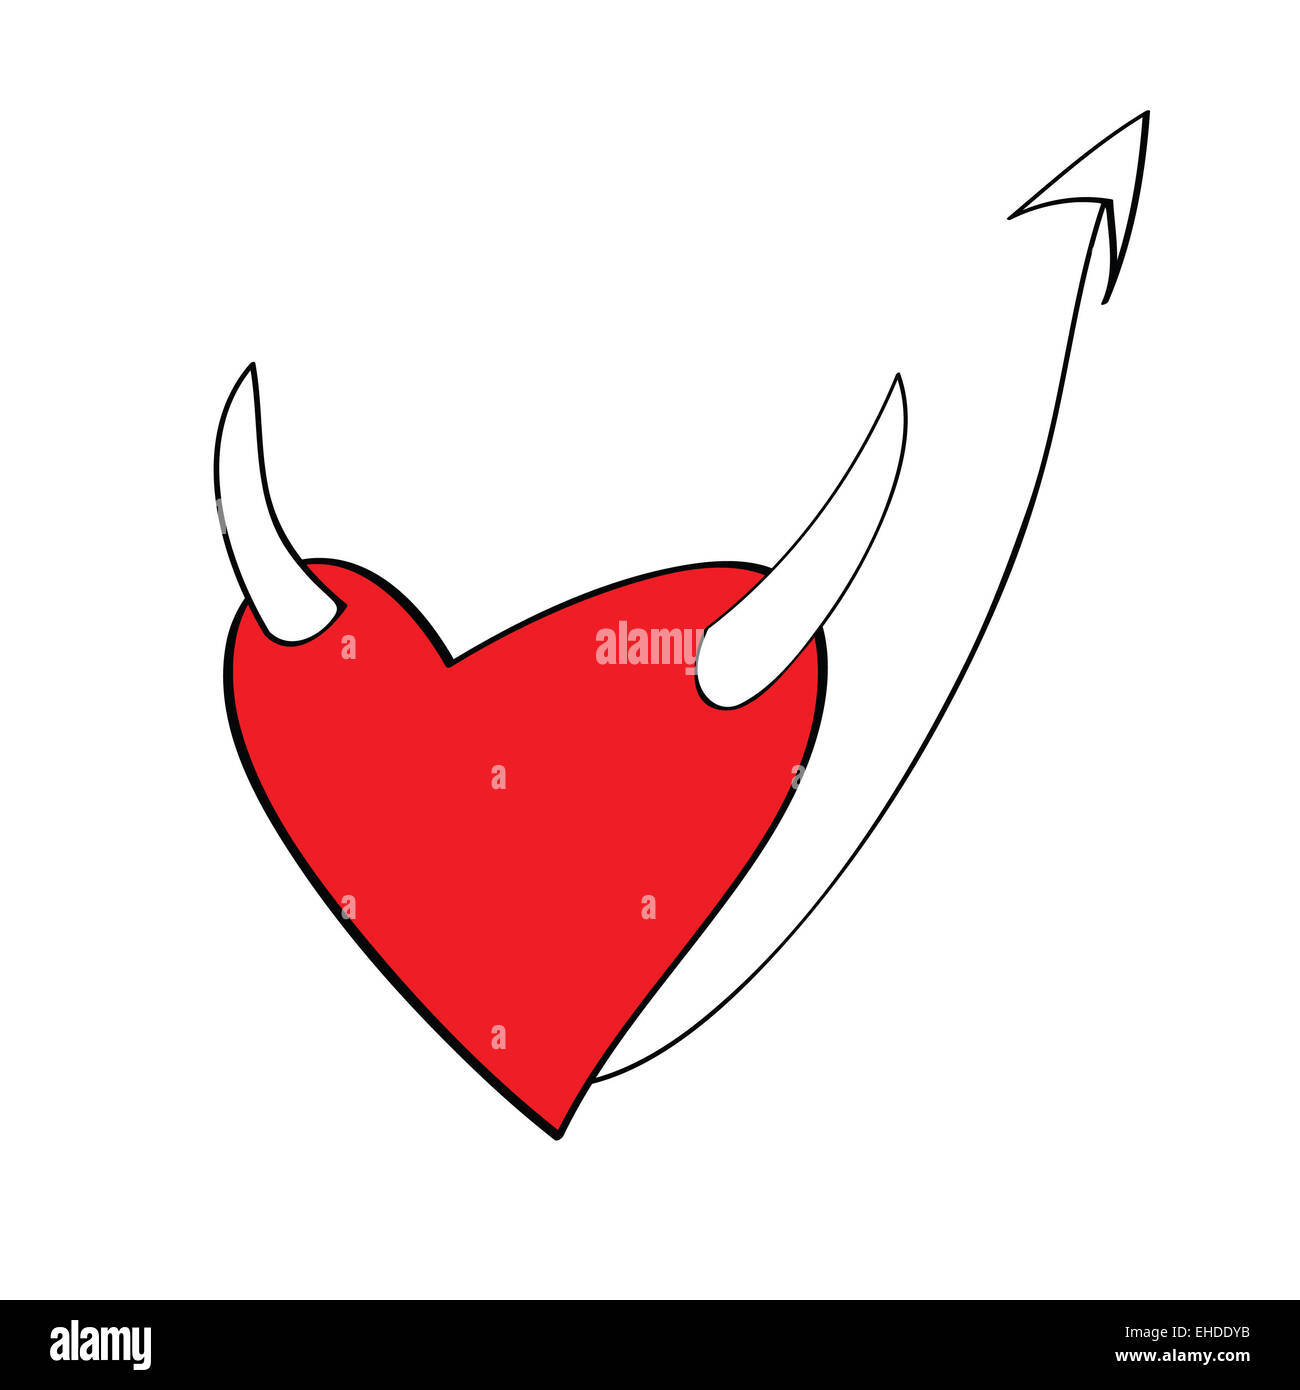 heart cartoons Stock Photo